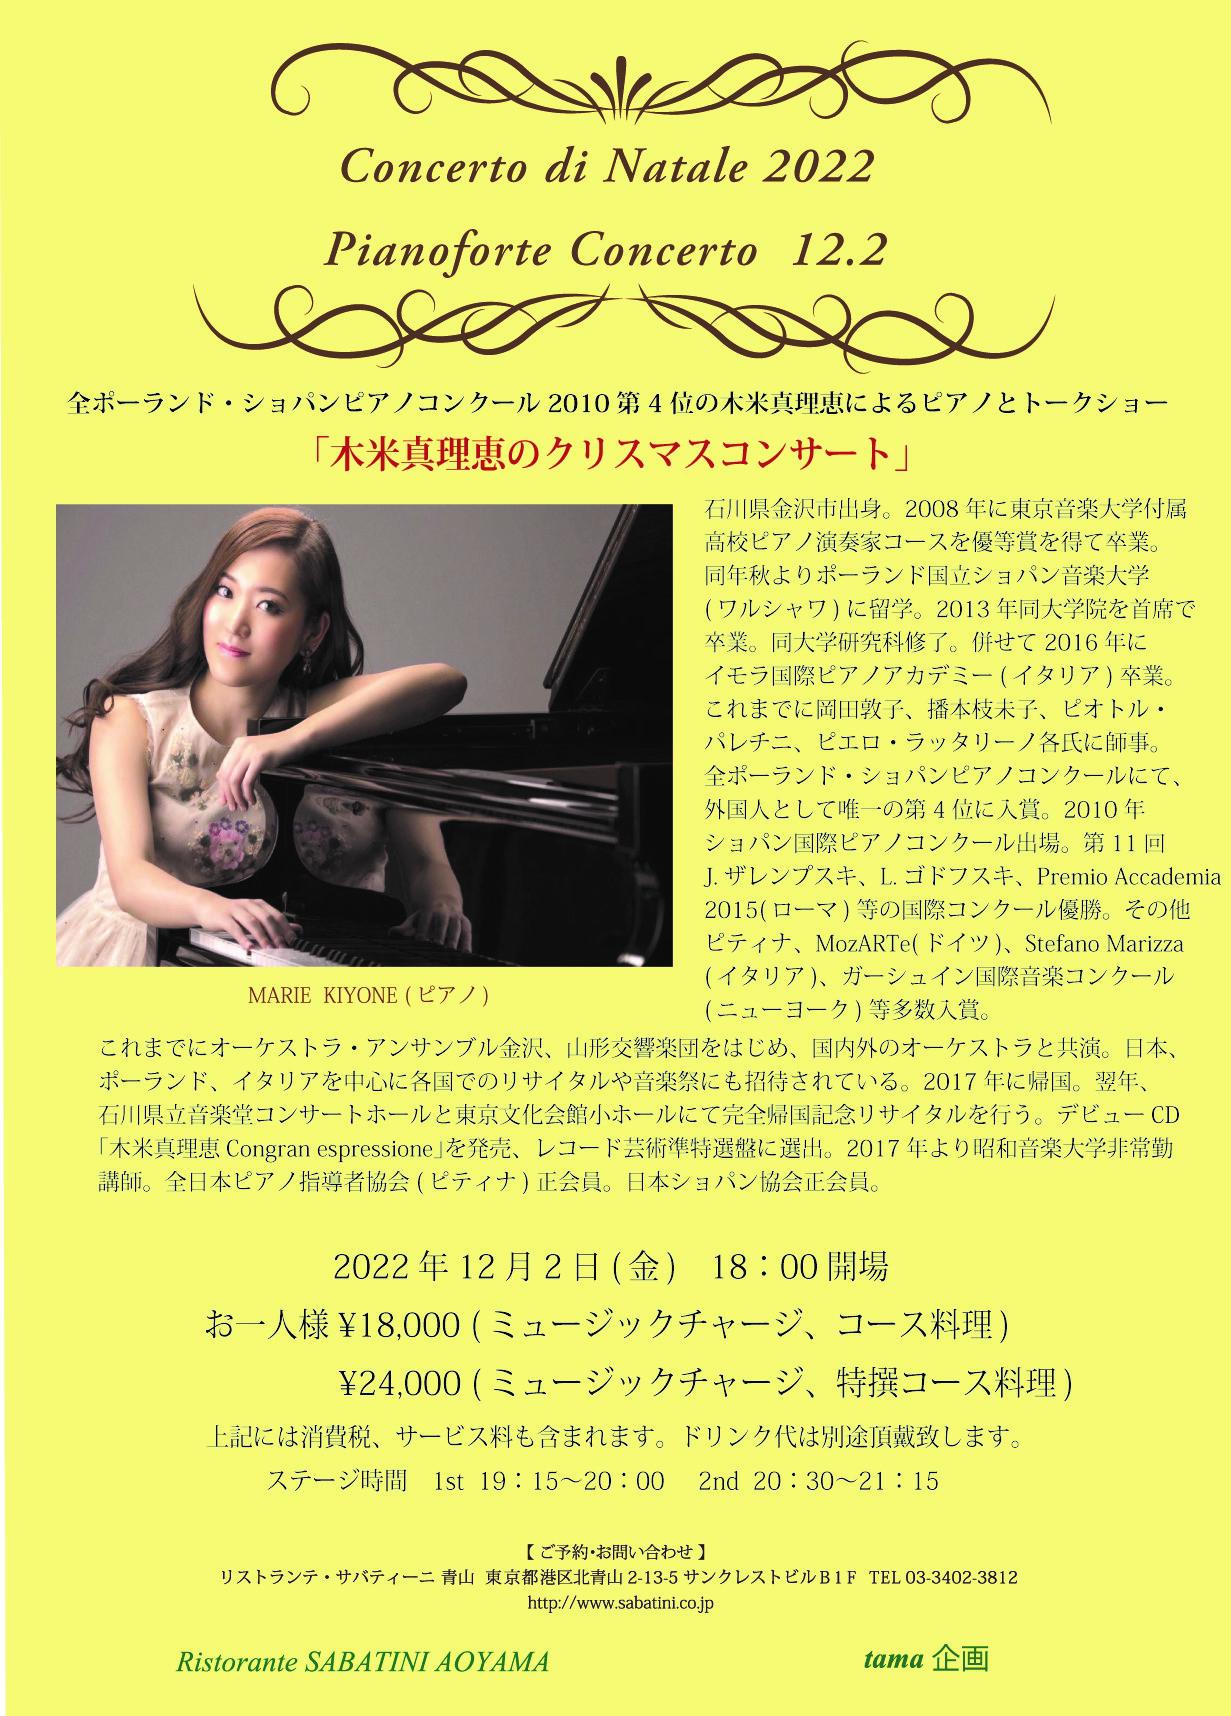 ■Ristorante SABATINI Aoyama【2022.12.2(金)クリスマスピアノコンサートのお知らせ】